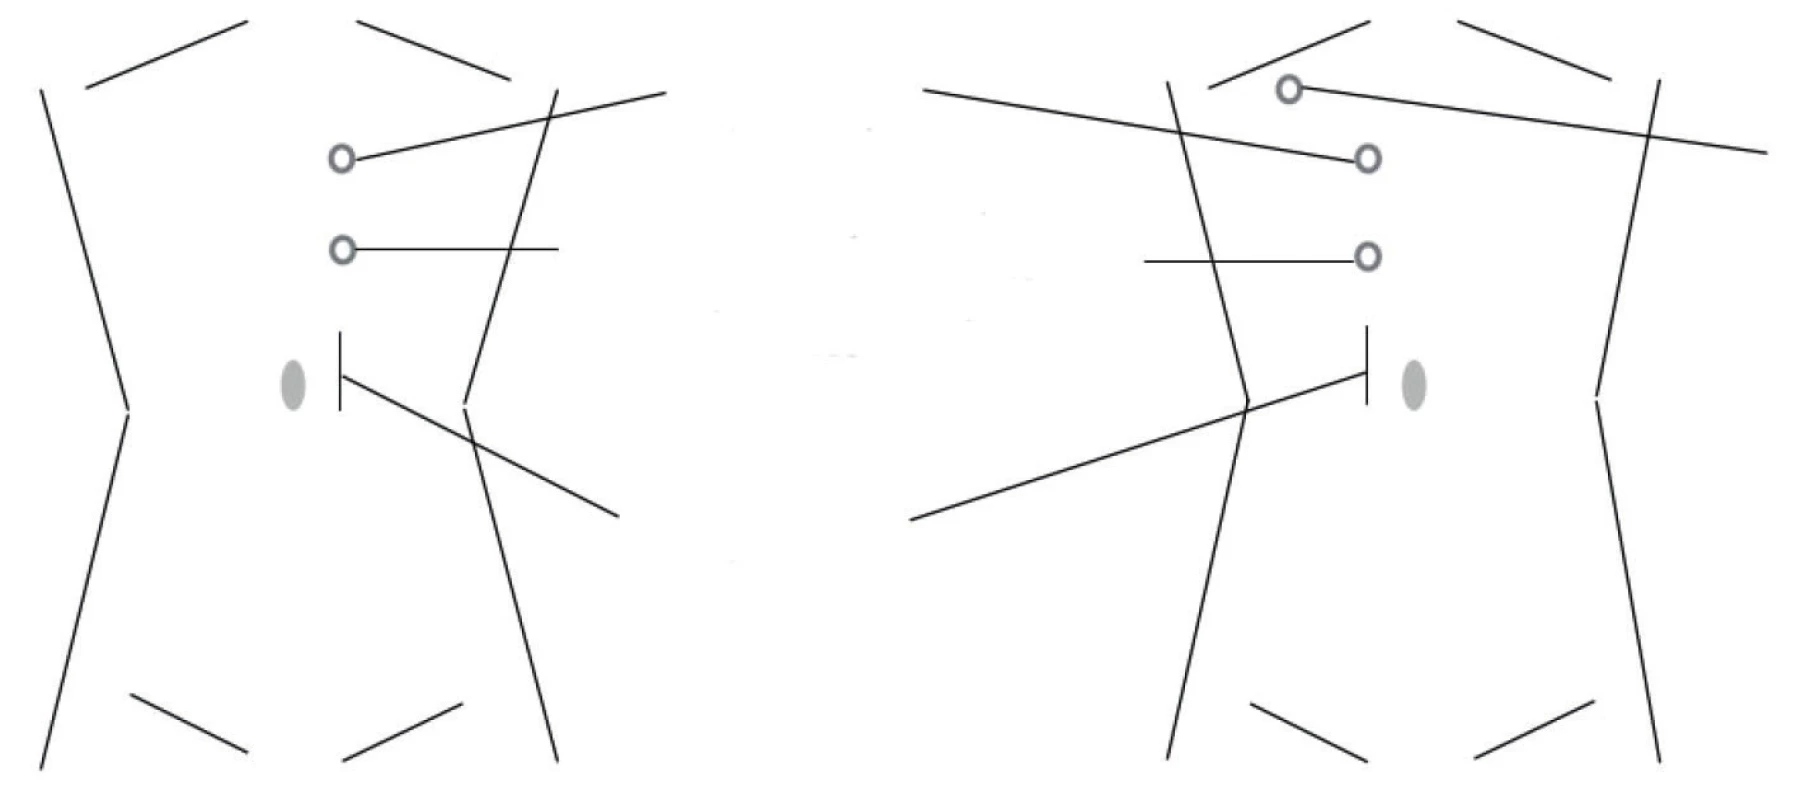 Rozmístění portů pro levou a pravou stranu<br>
Fig. 1. Position of ports for left and right side